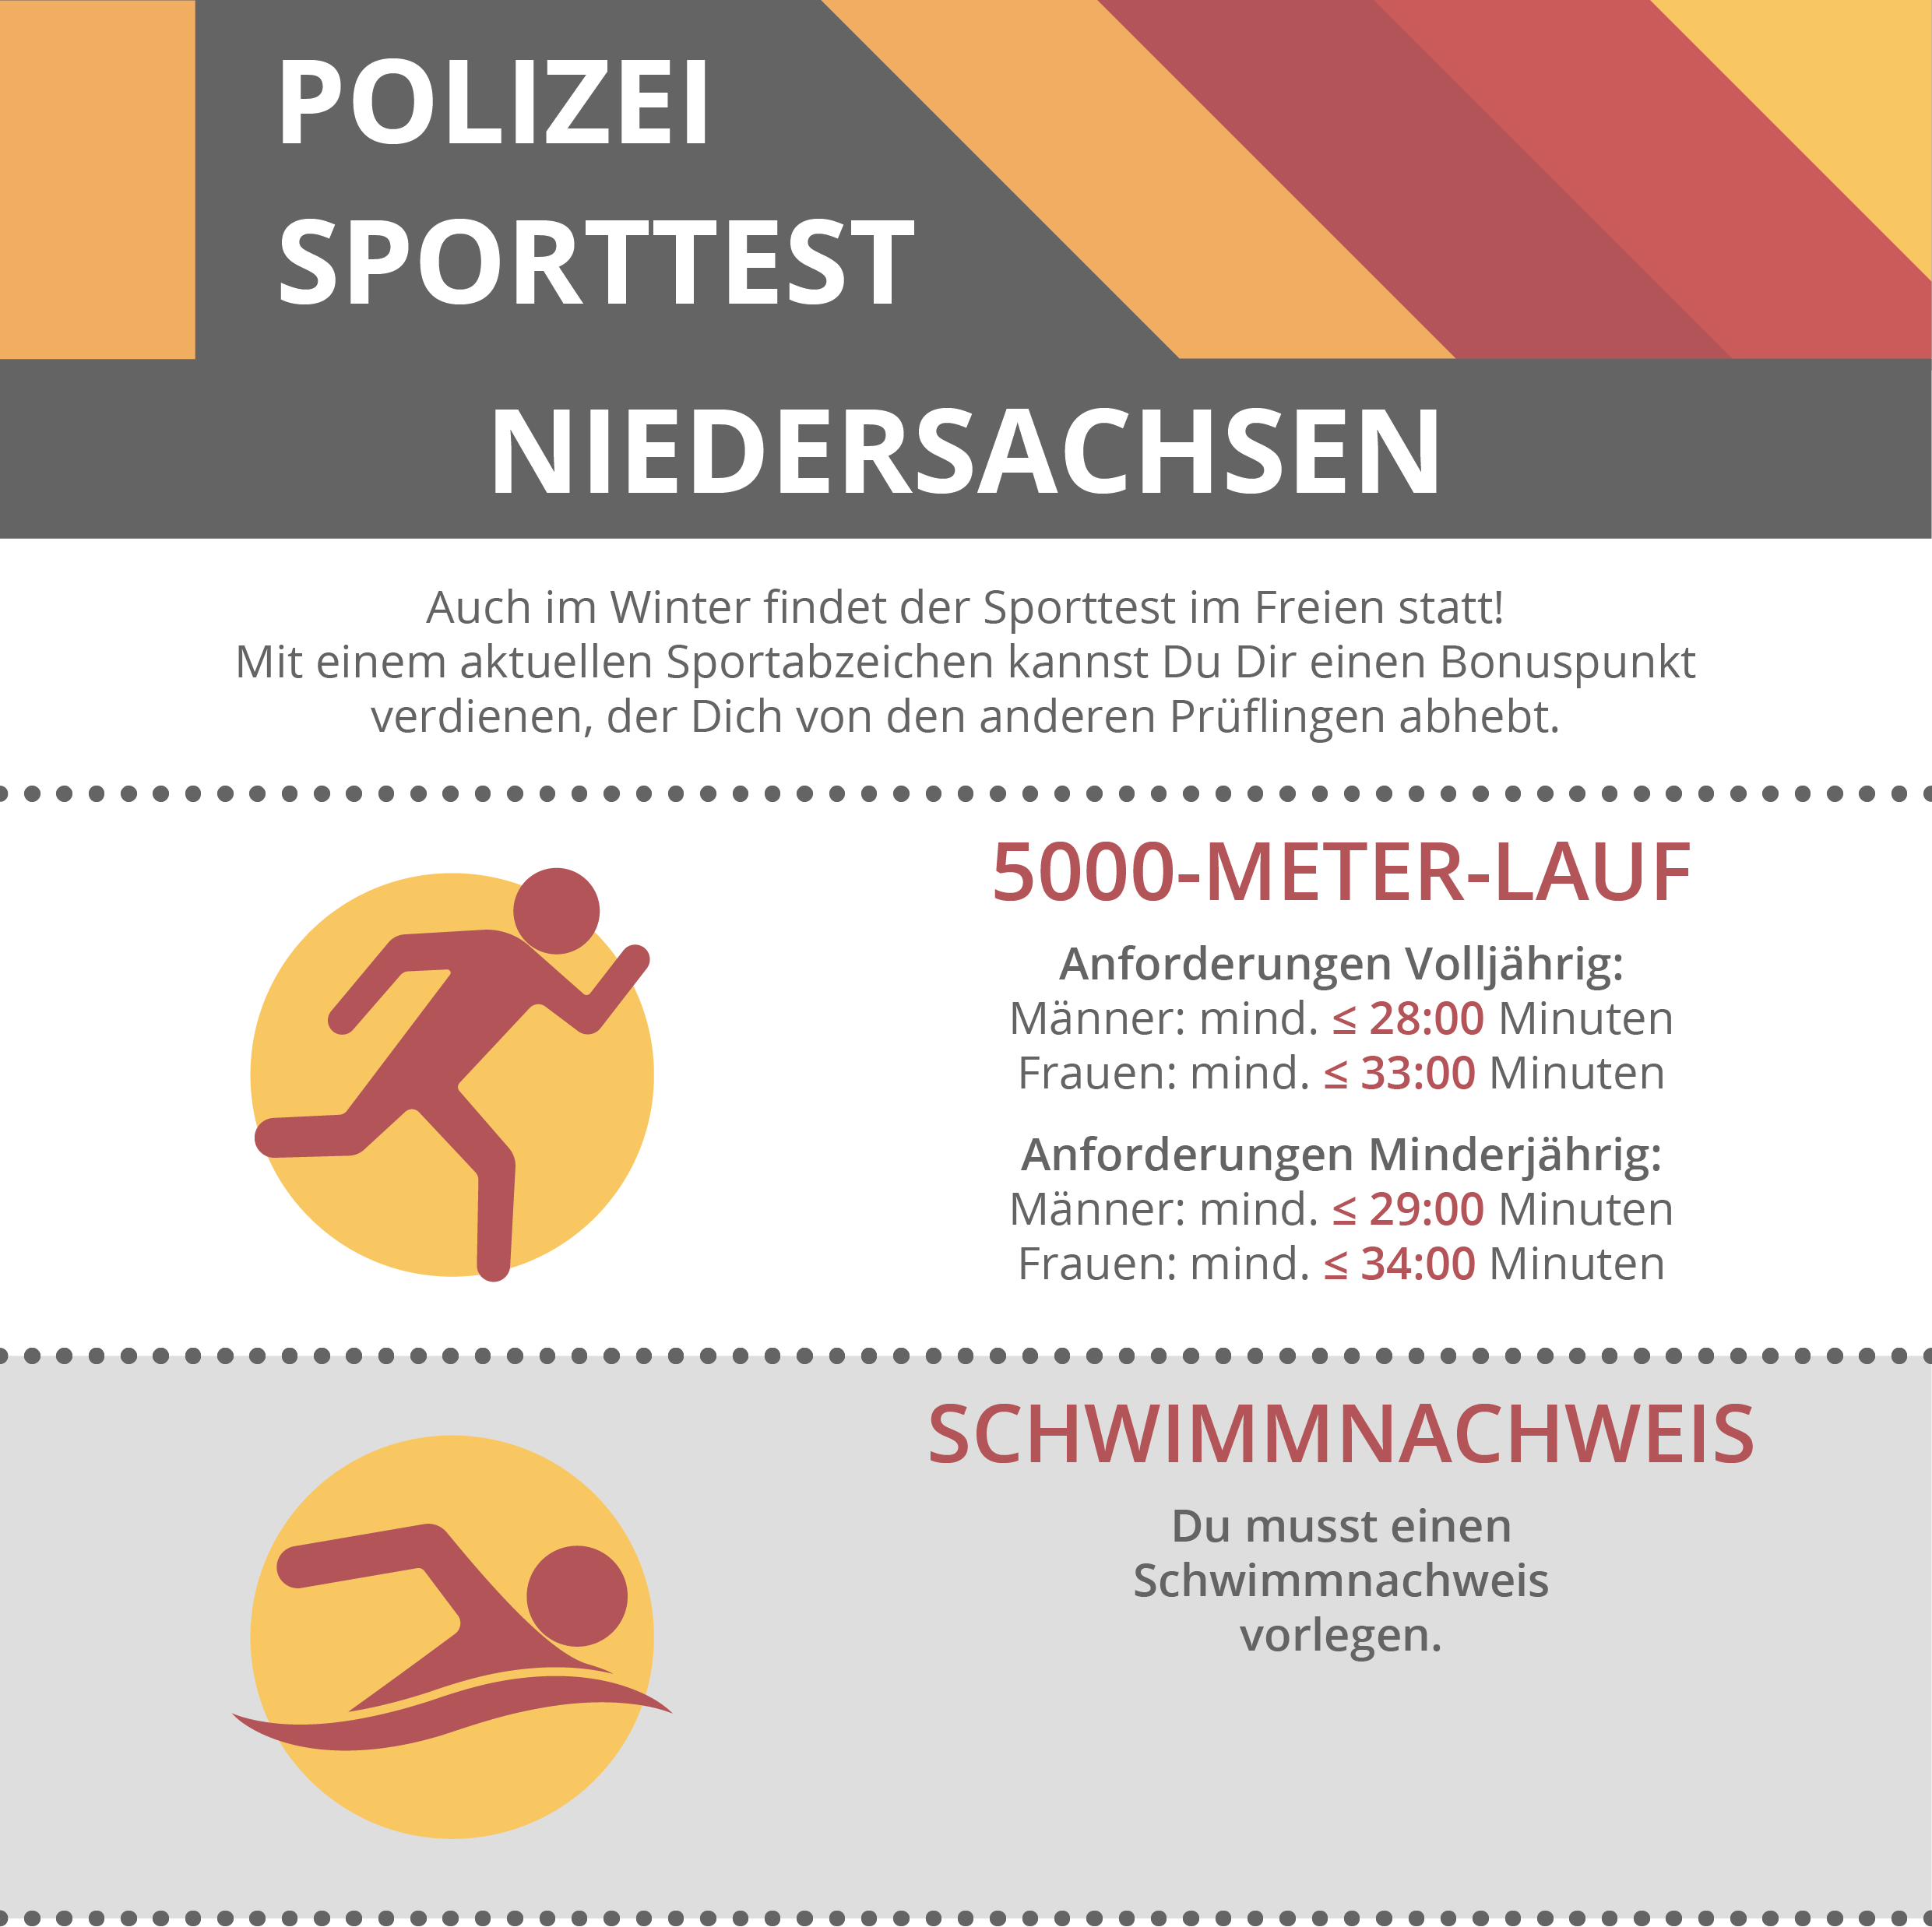 Sporttest Polizei Niedersachsen